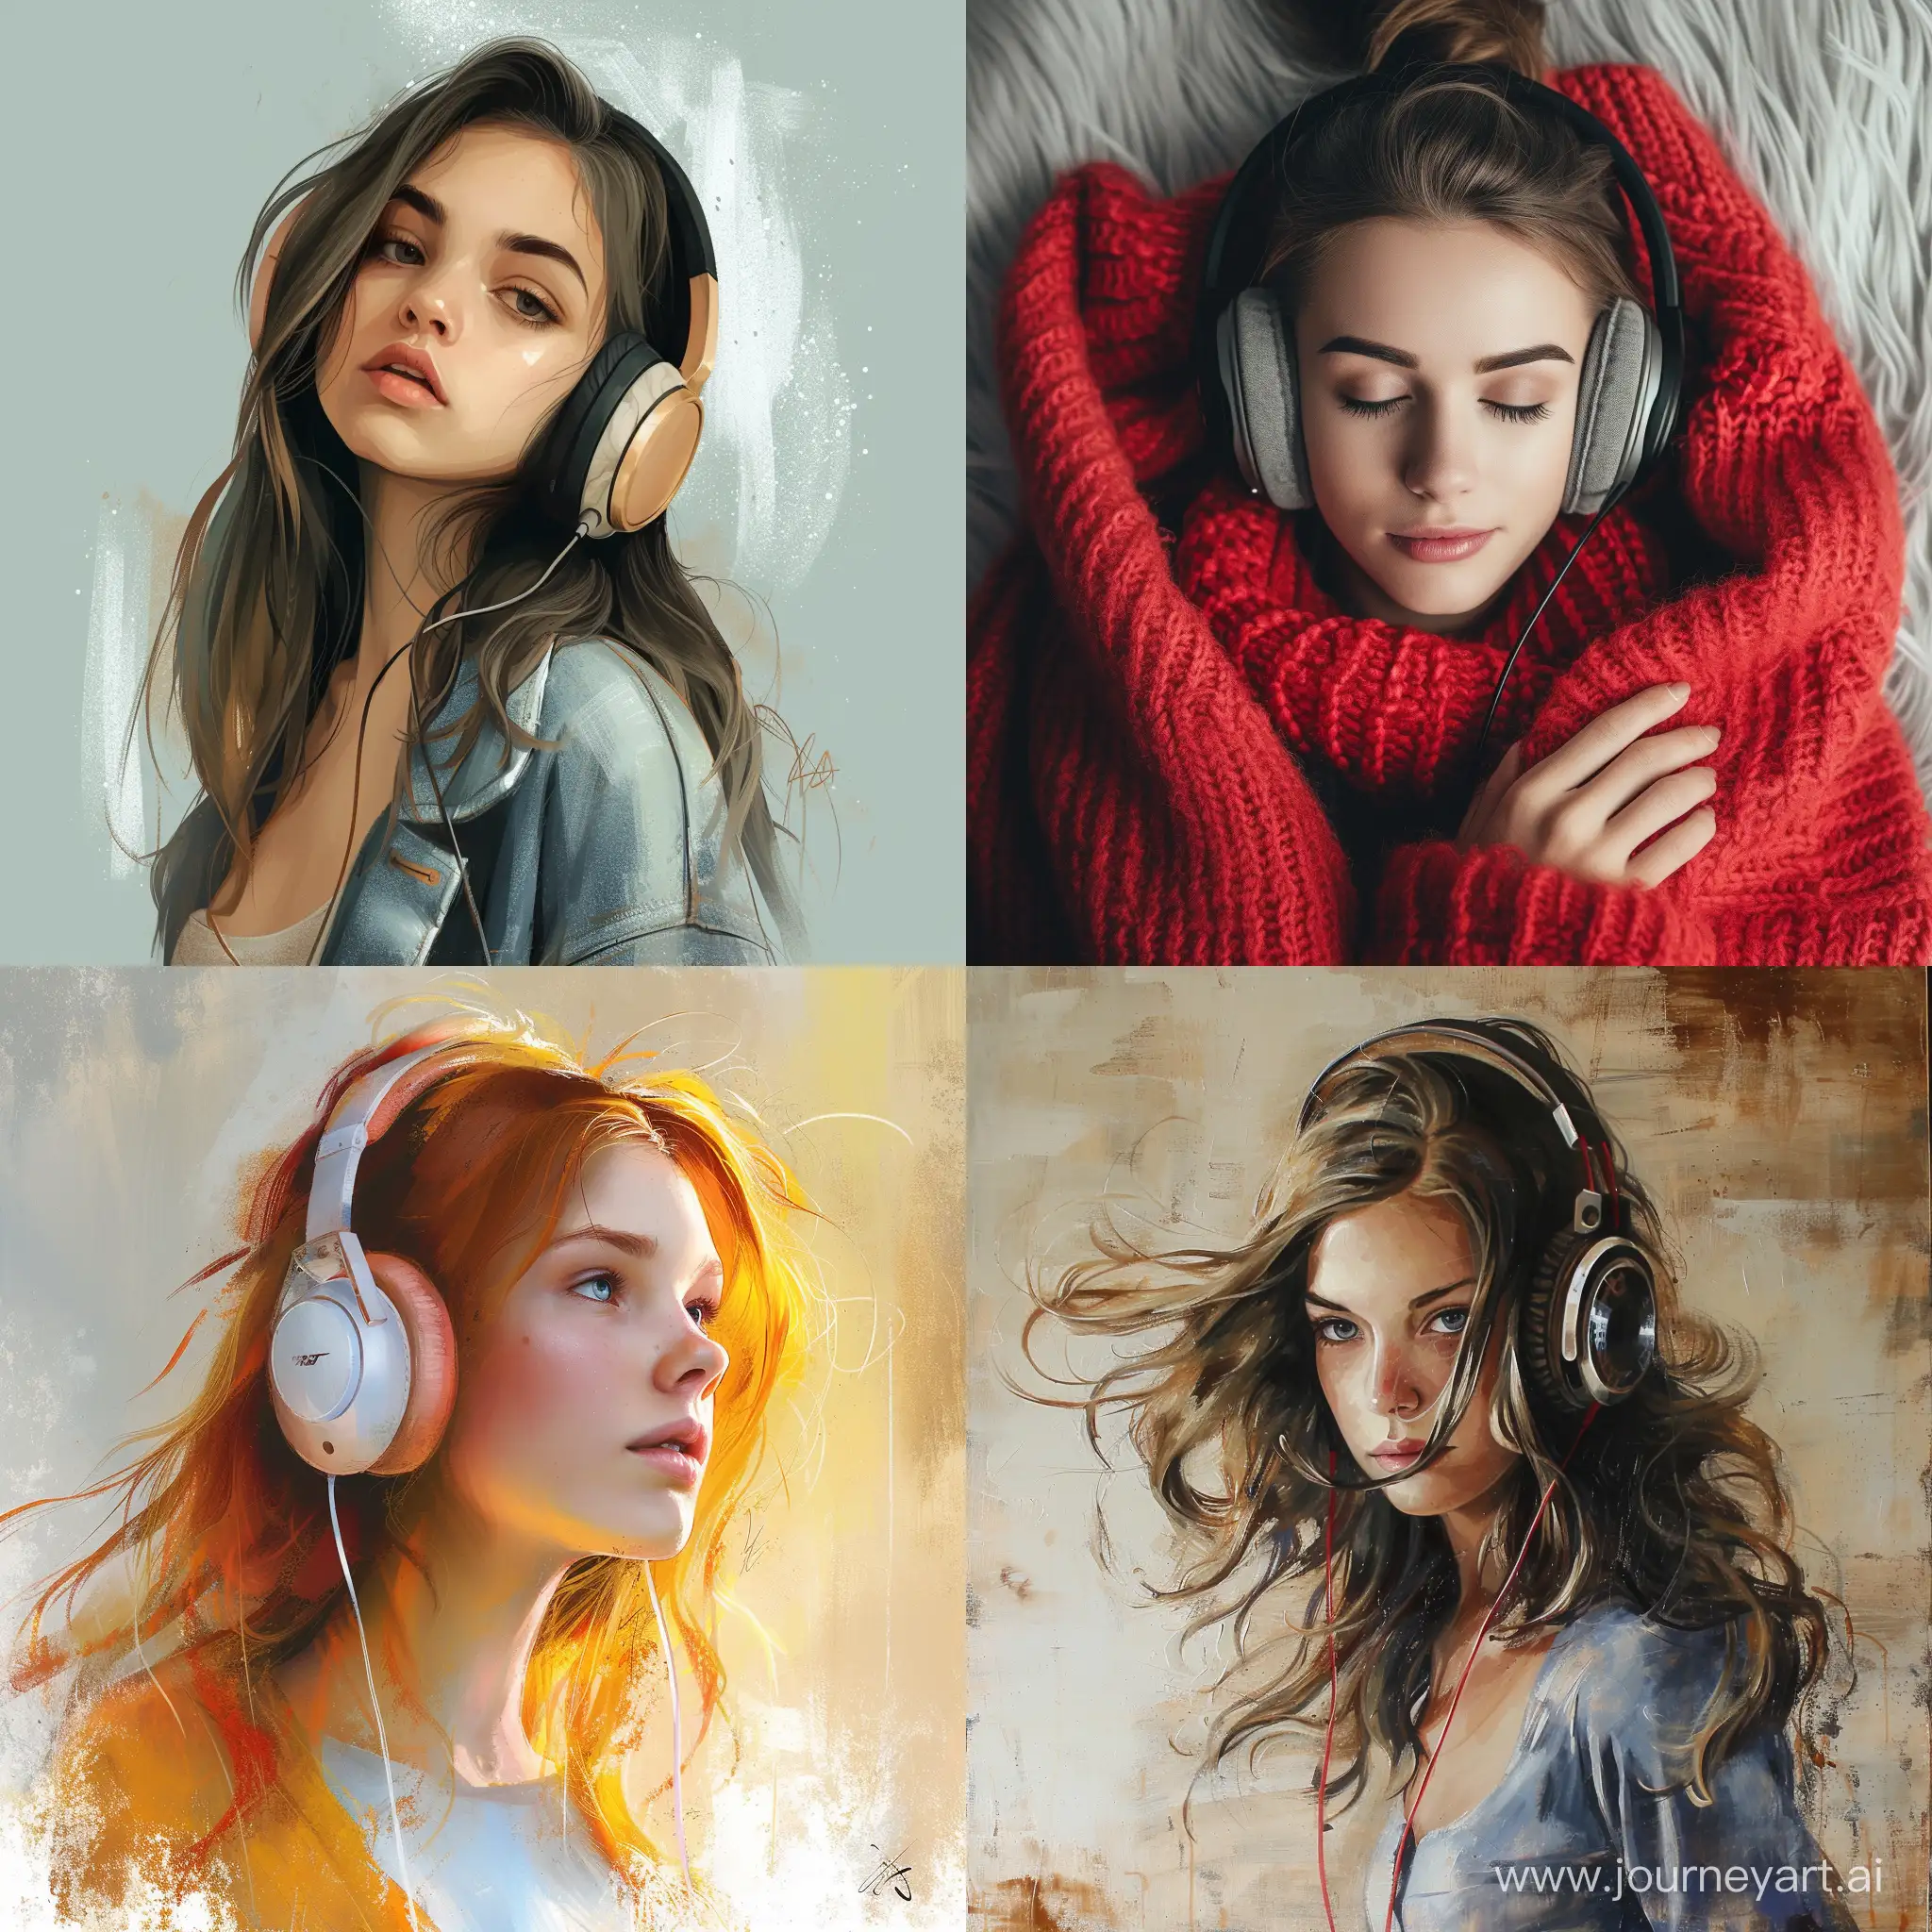 Joyful-Girl-in-Headphones-Enjoying-Music